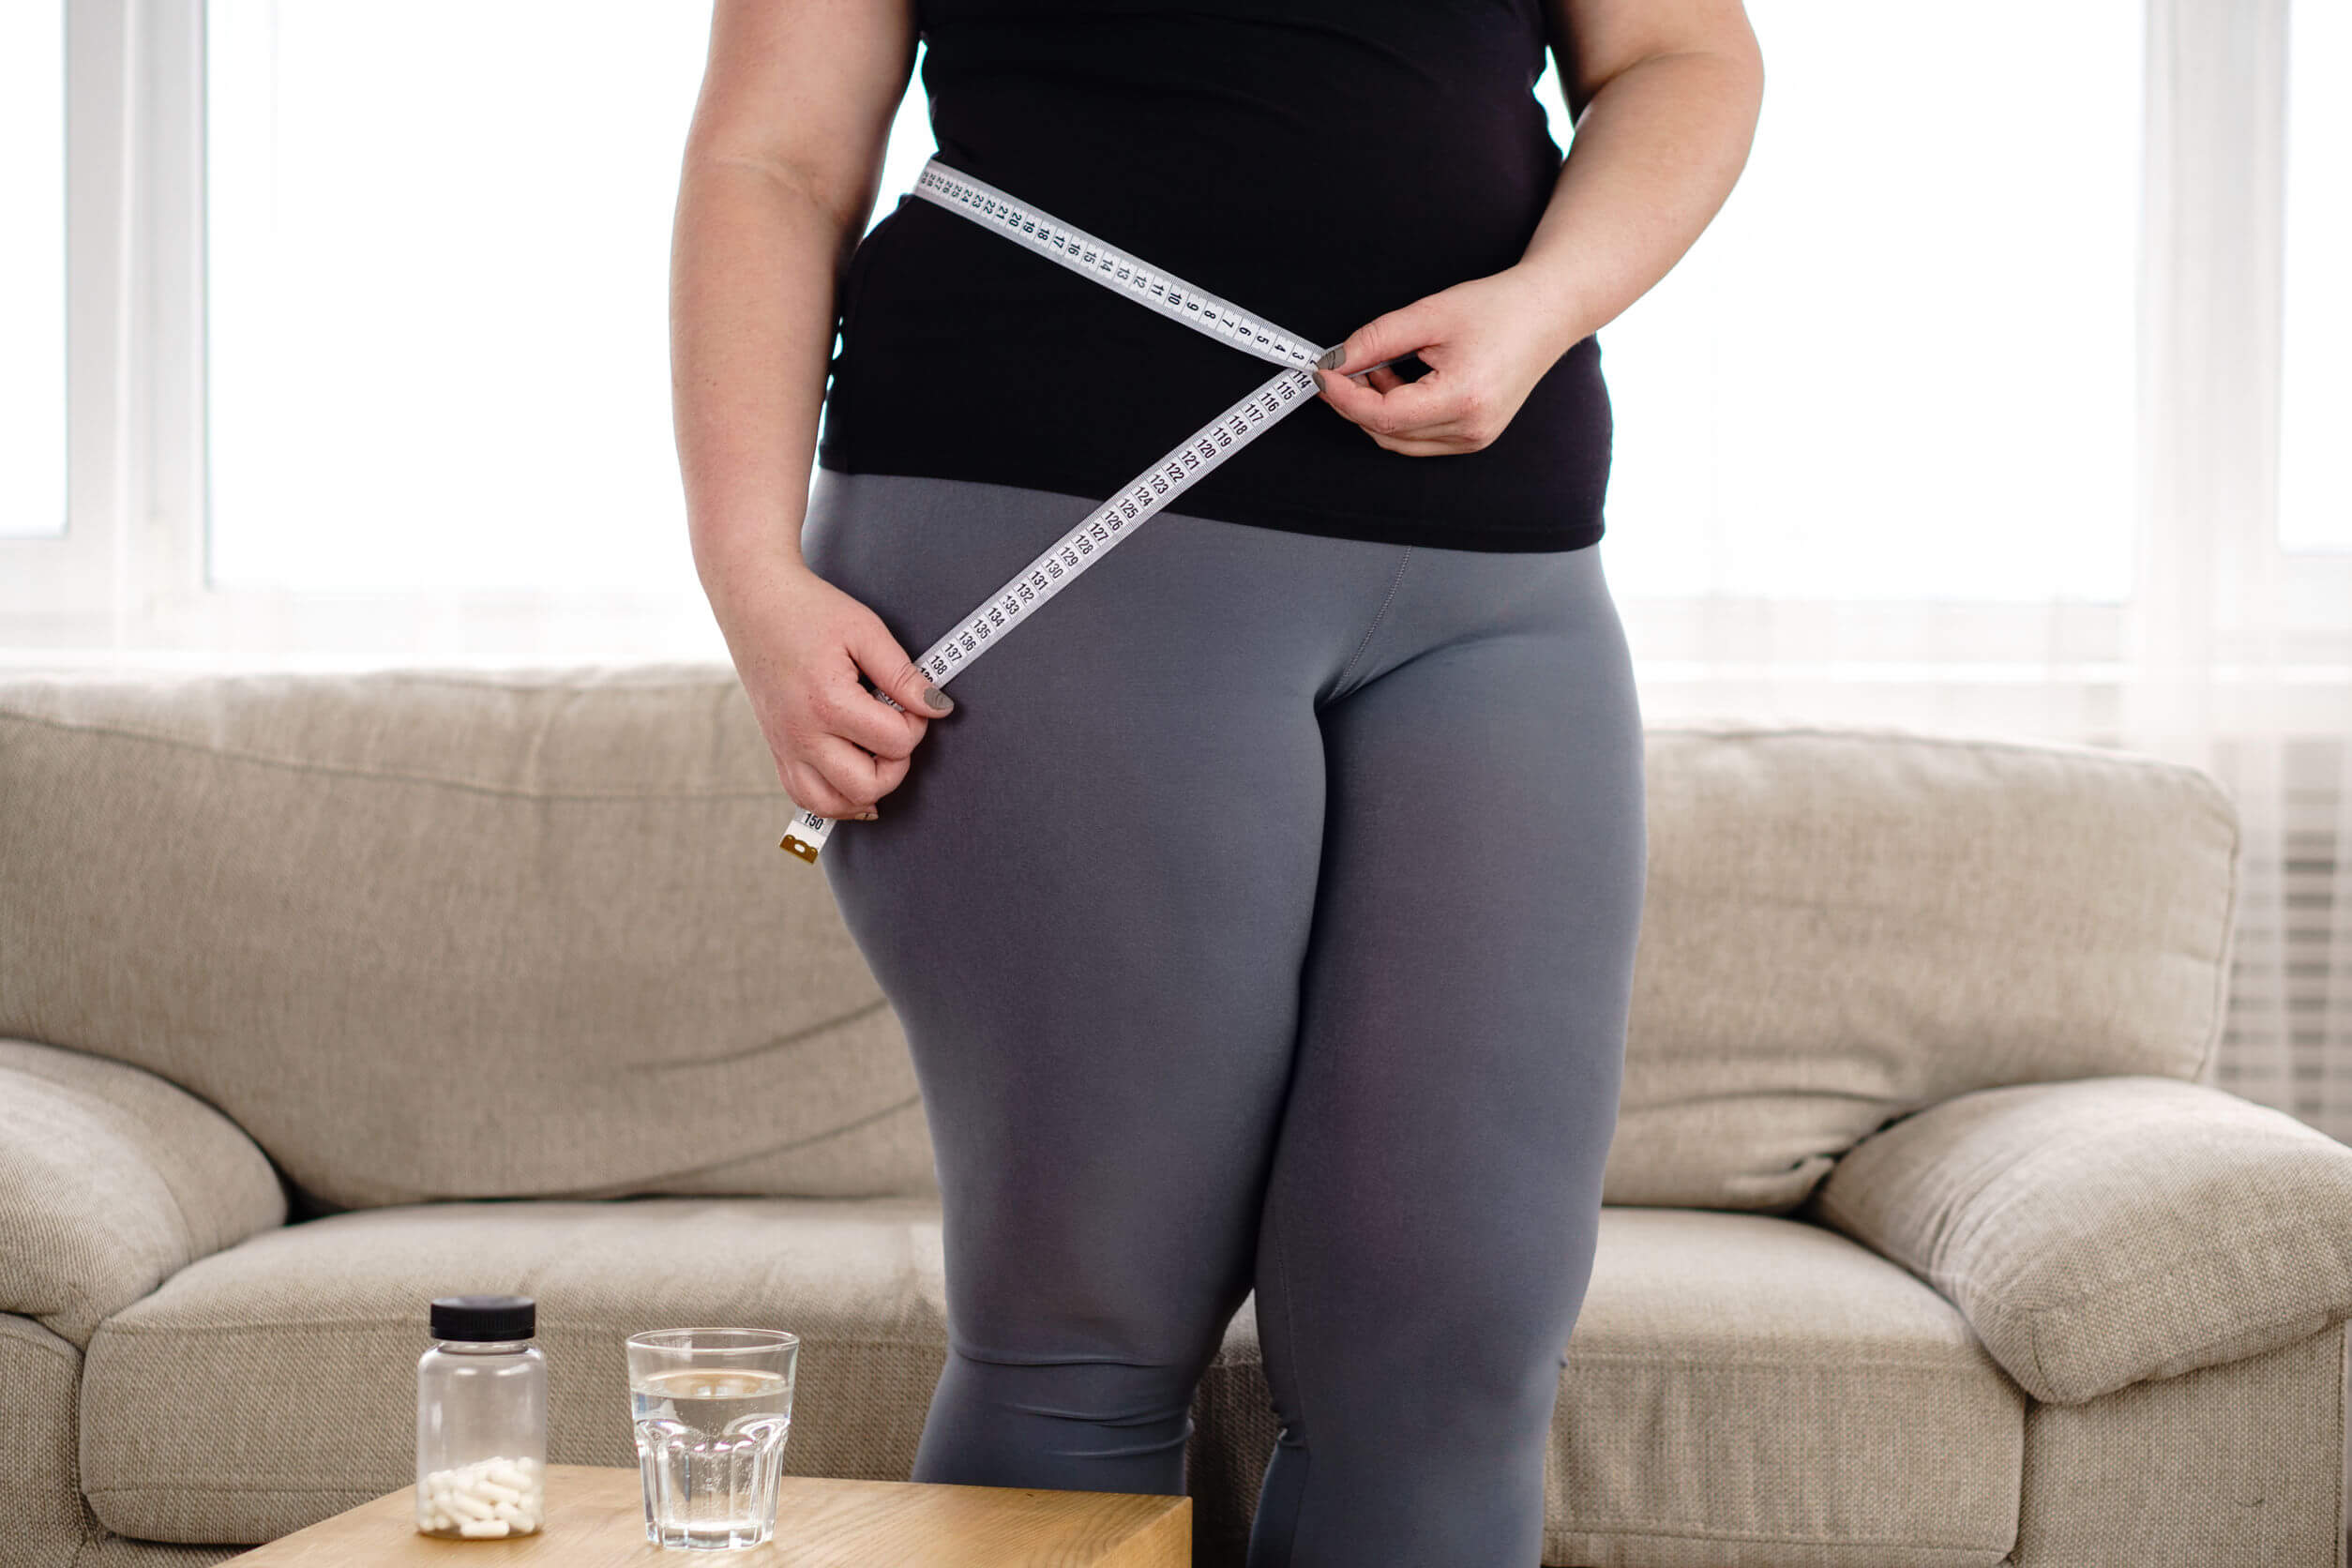 As causas e fatores de risco para o diabetes tipo 2 incluem excesso de peso e obesidade.